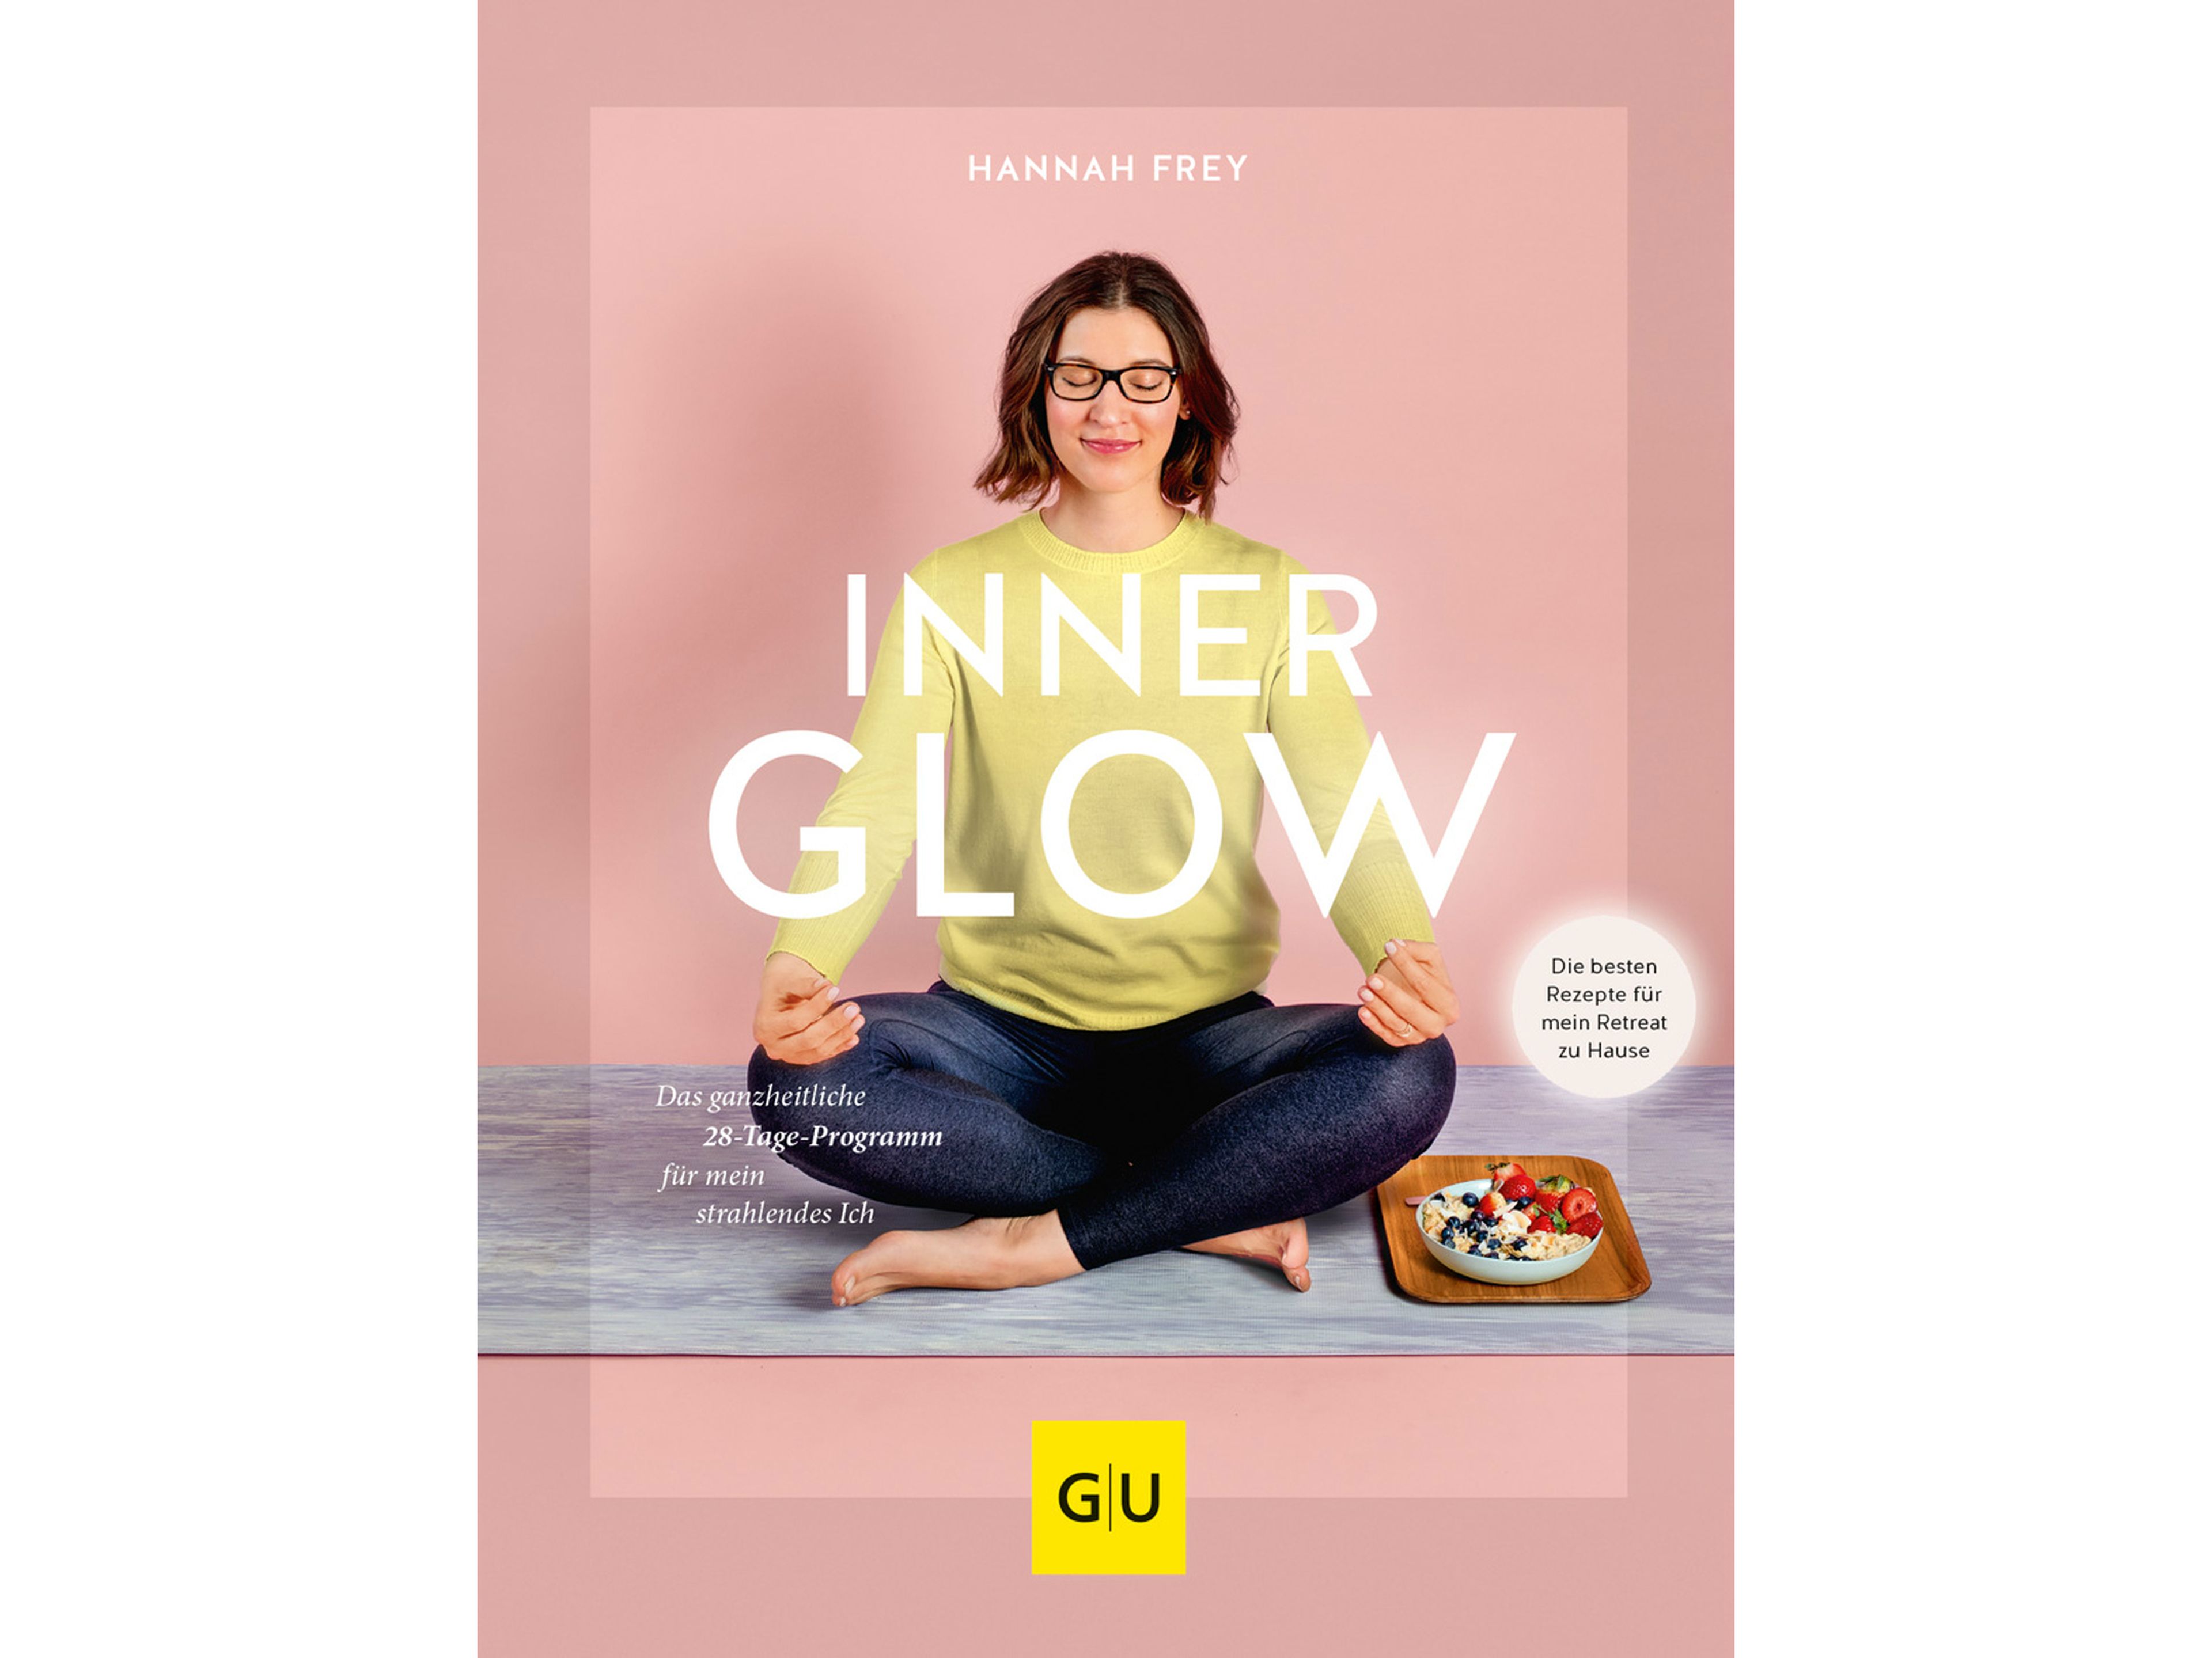 Dieses und viele weitere Rezepte findest du im Buch "Inner Glow: Das ganzheitliche 28-Tage Programm für mein strahlendes Ich", erschienen im GU Verlag.